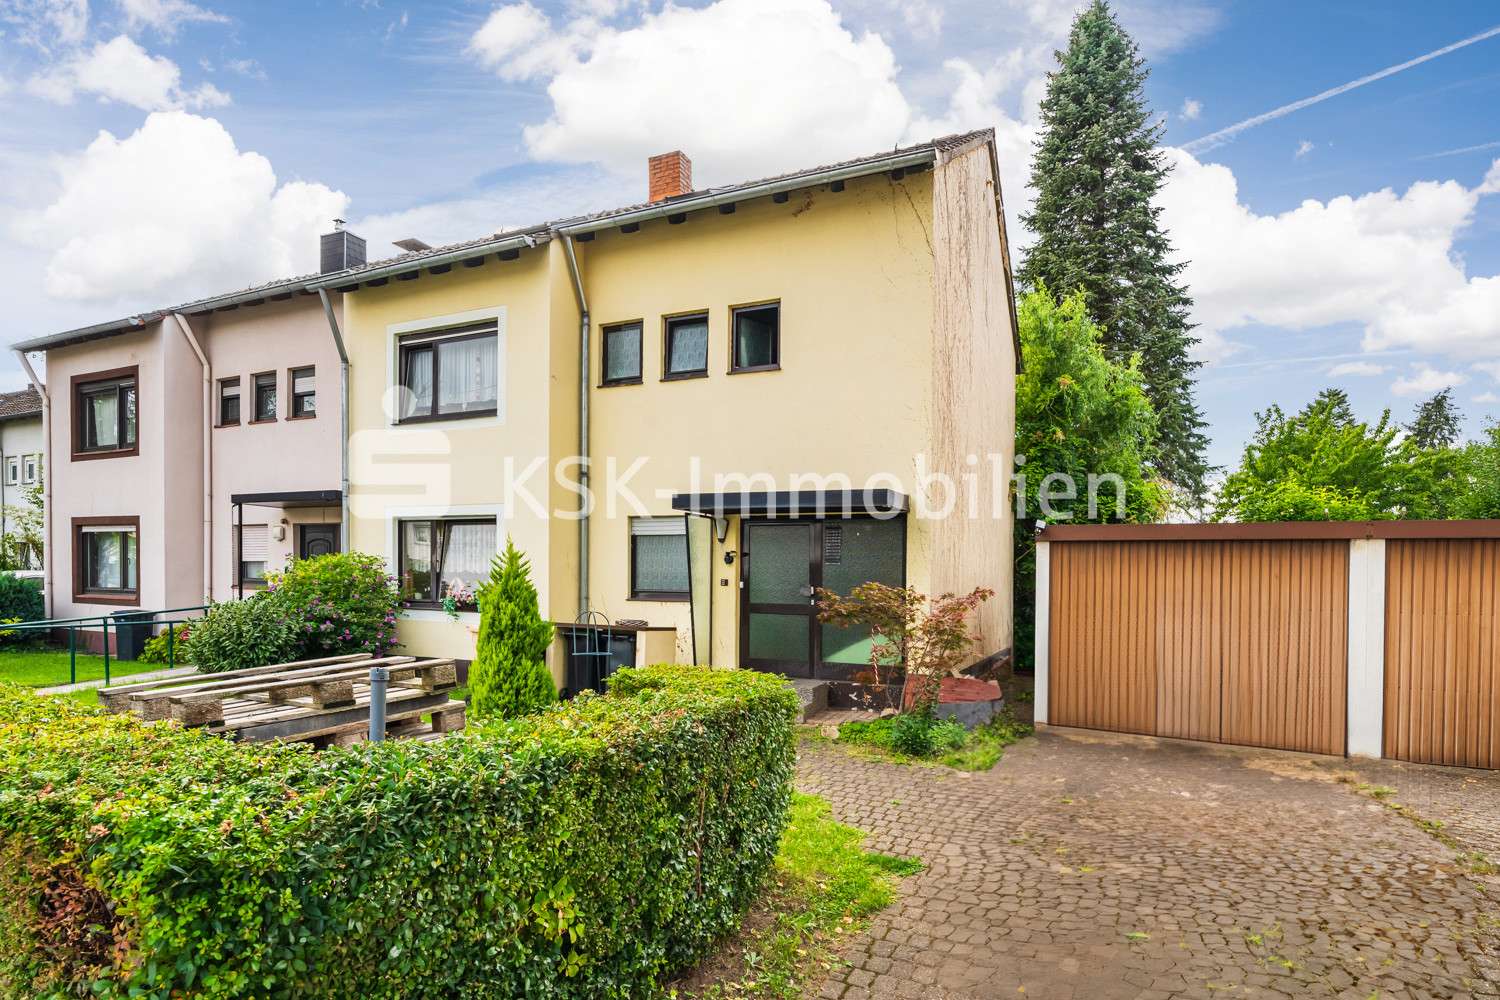 117984 Außenansicht  - Doppelhaushälfte in 53121 Bonn / Dransdorf mit 118m² kaufen